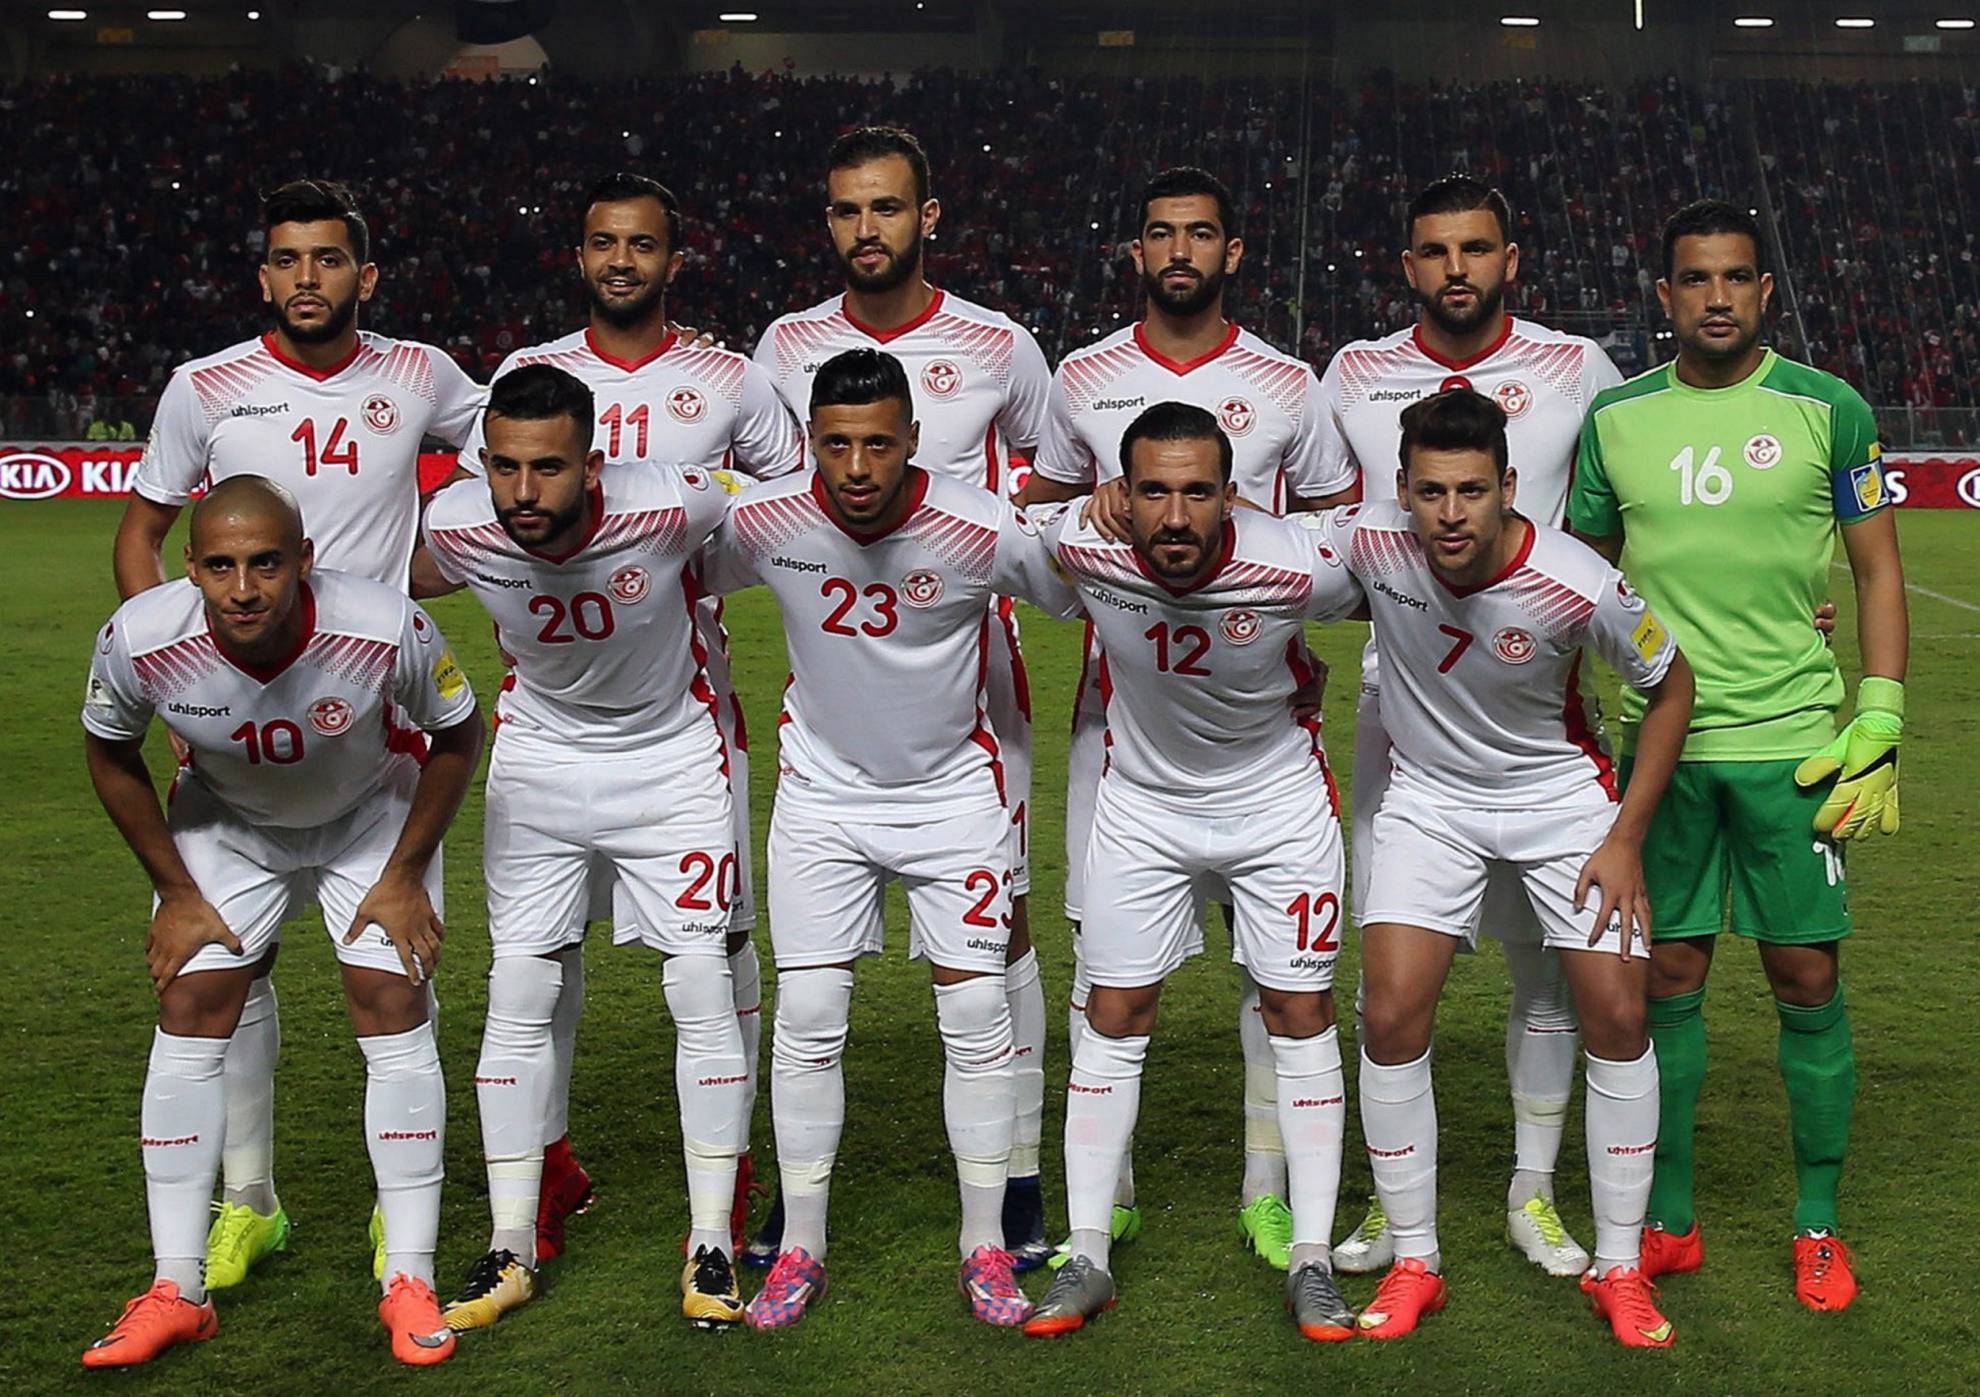 Alineación de Túnez en el Mundial 2018